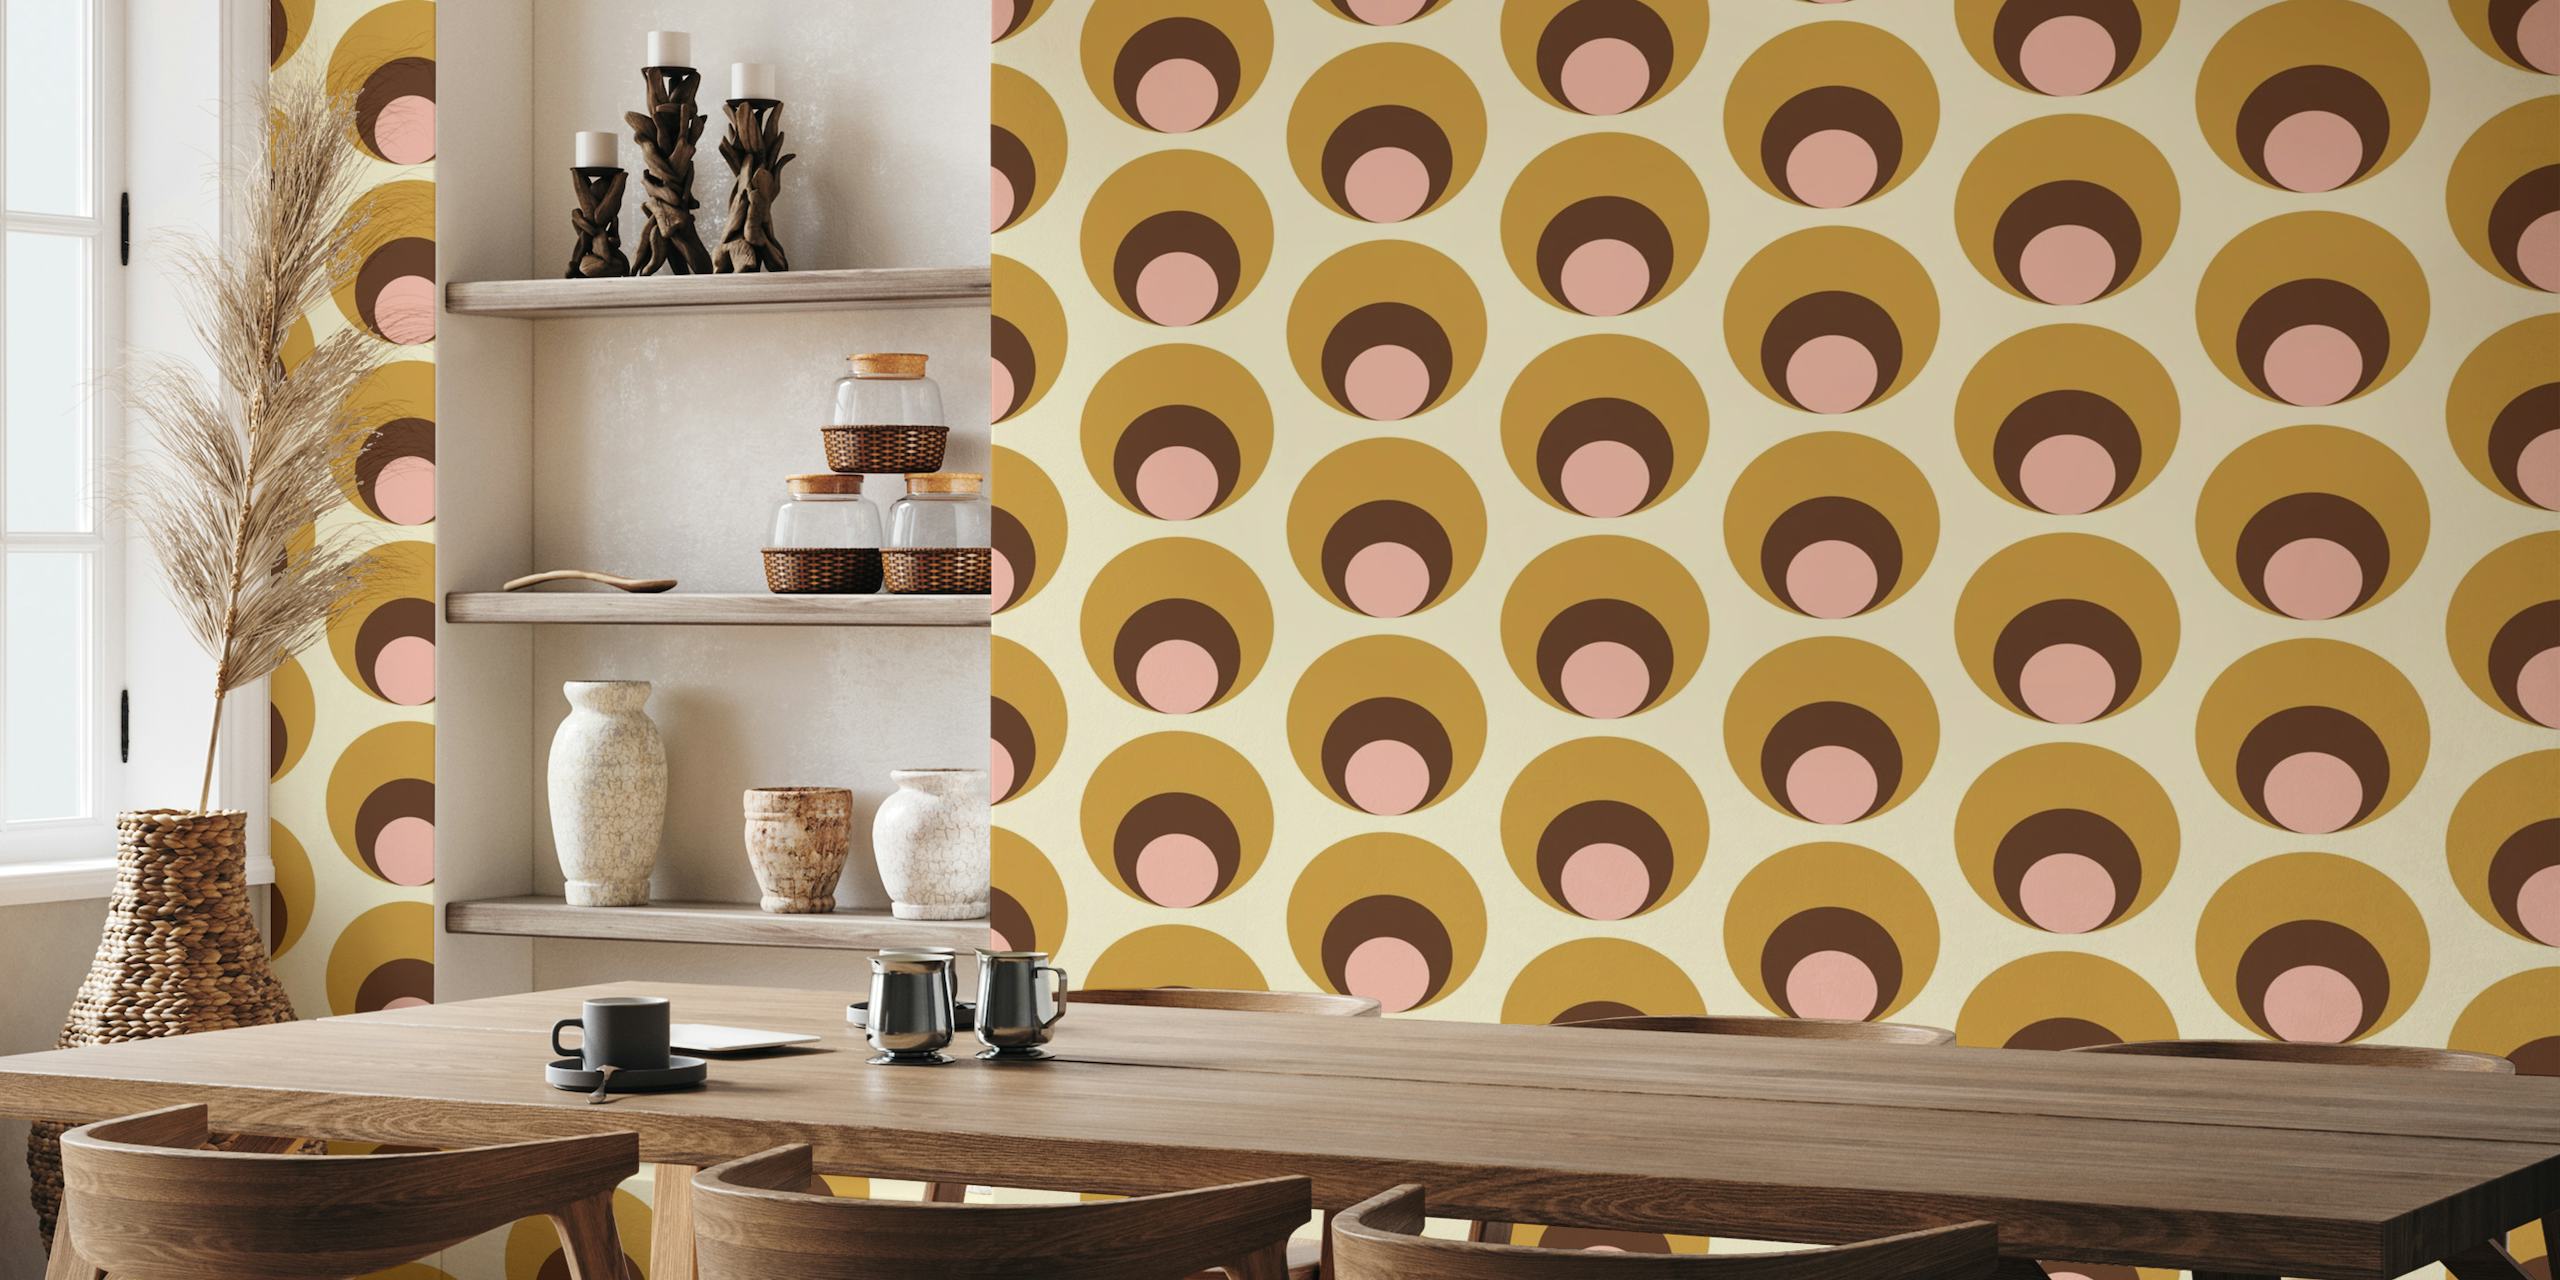 Apricity Retro Dots Beige Vægmaleri med overlappende cirkler i beige, taupe og blush toner.